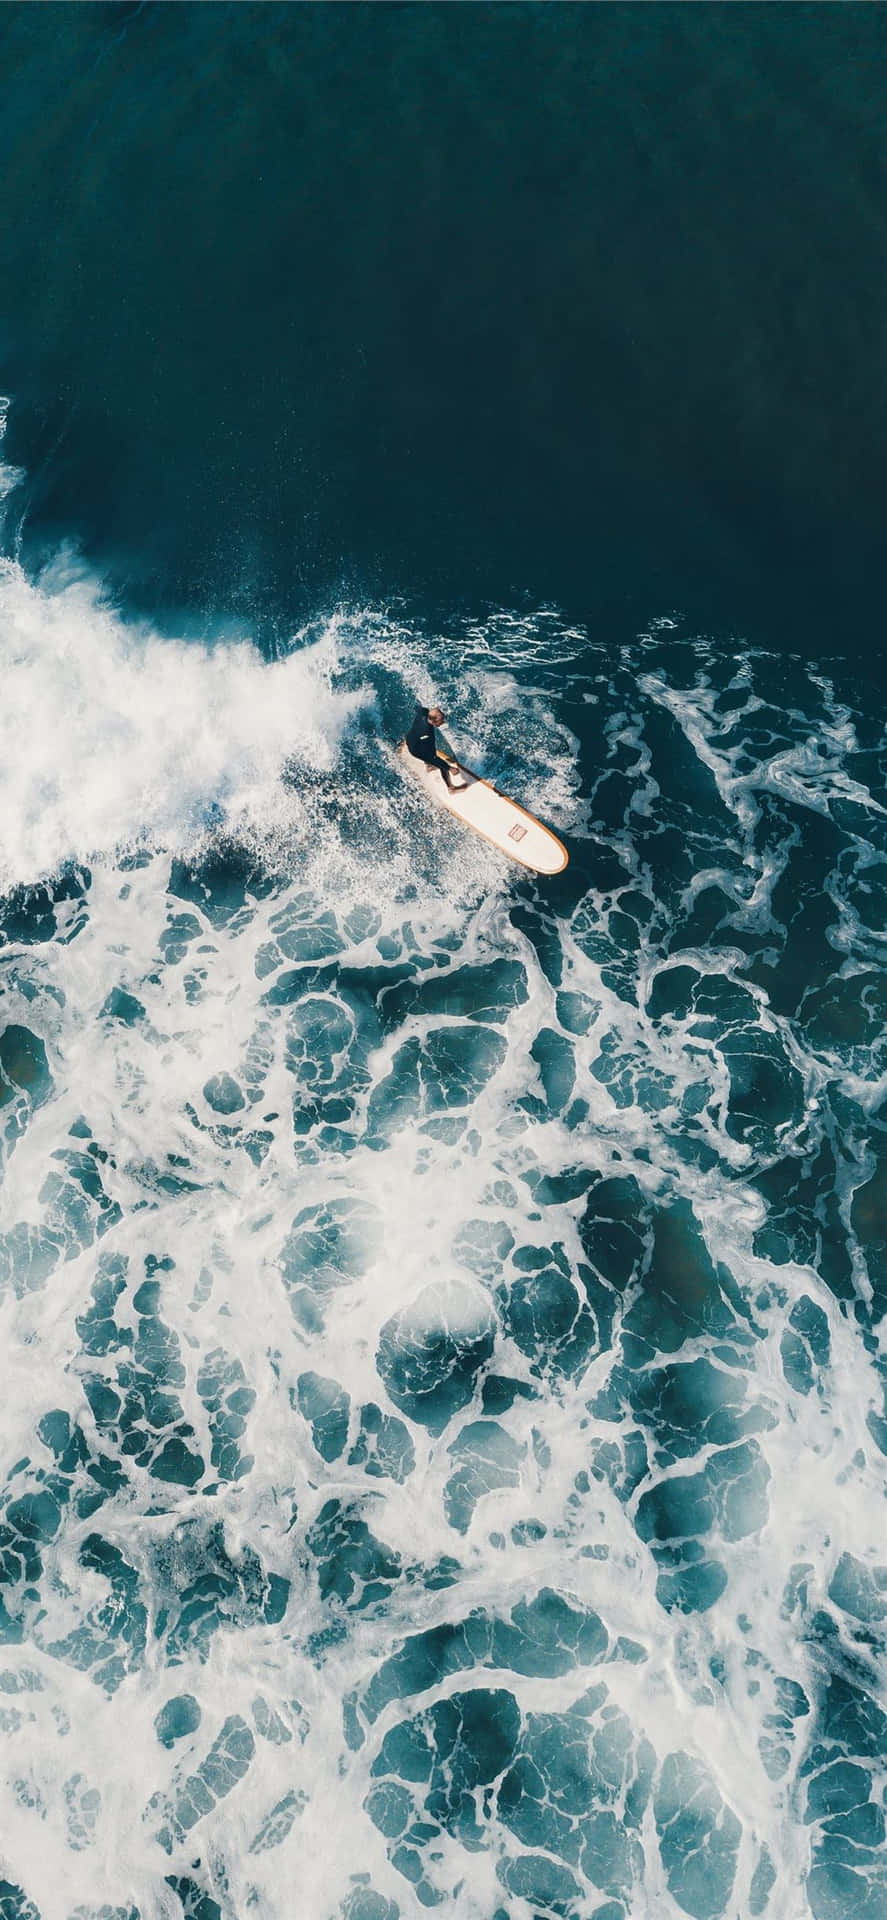 Fang bølgen af fremtiden med Surfing Iphone. Wallpaper